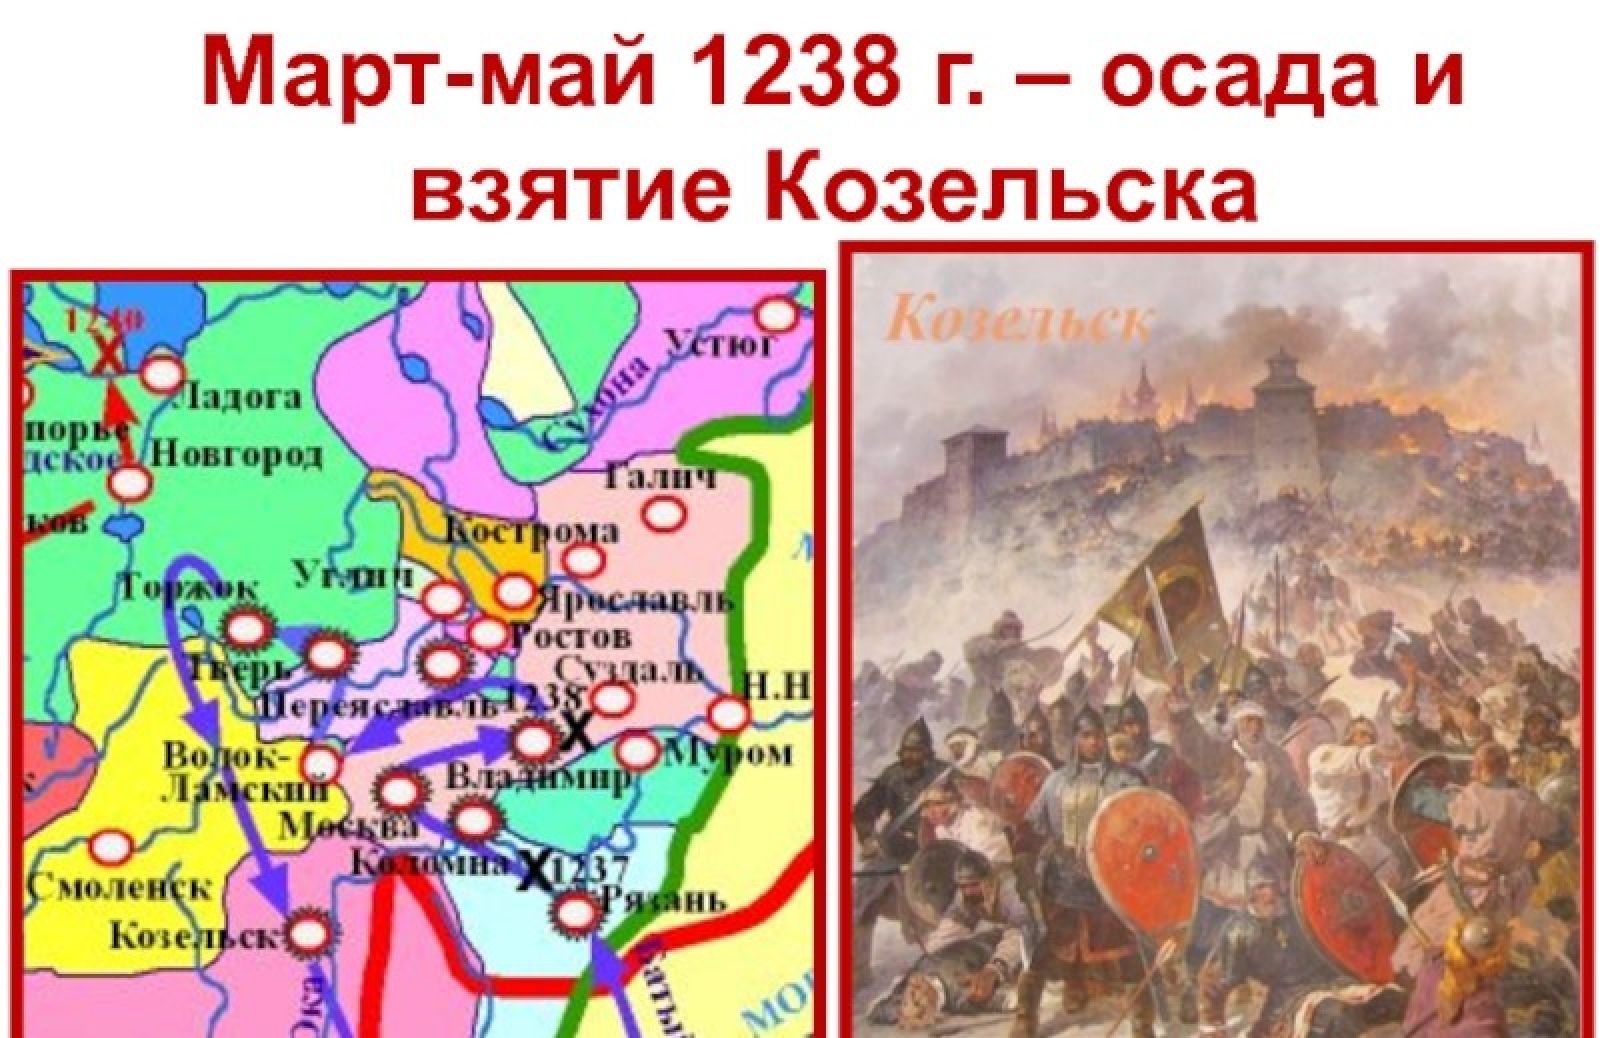 Март-май 1238 г. – Осада и взятие Козельска